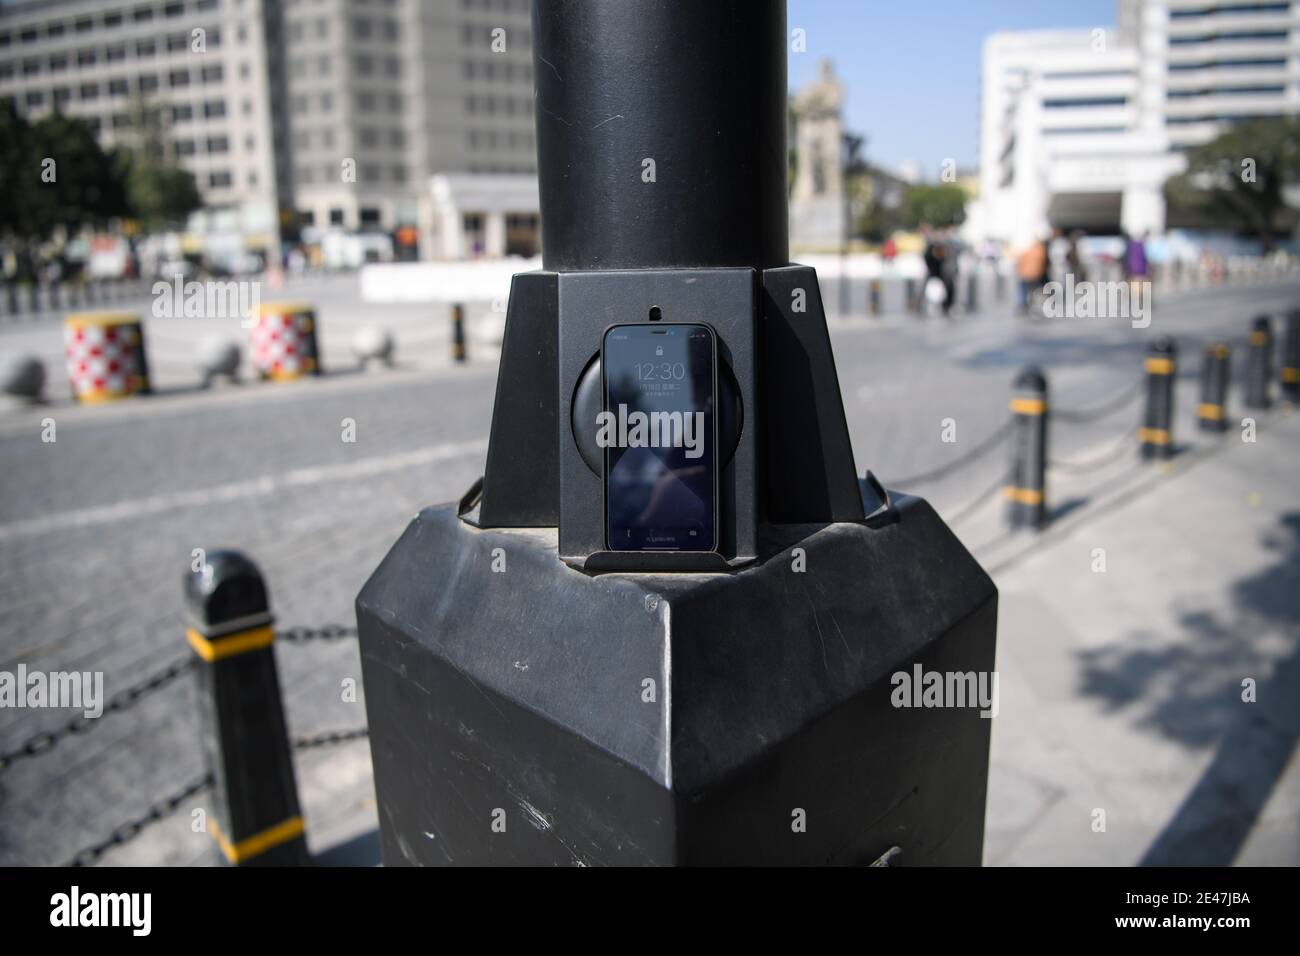 Un gadget fornisce la ricarica wireless per smartphone di pedoni sono visti attaccati ad una lampione nella città di Guangzhou, Cina meridionale¯s Guangdong provincia Foto Stock